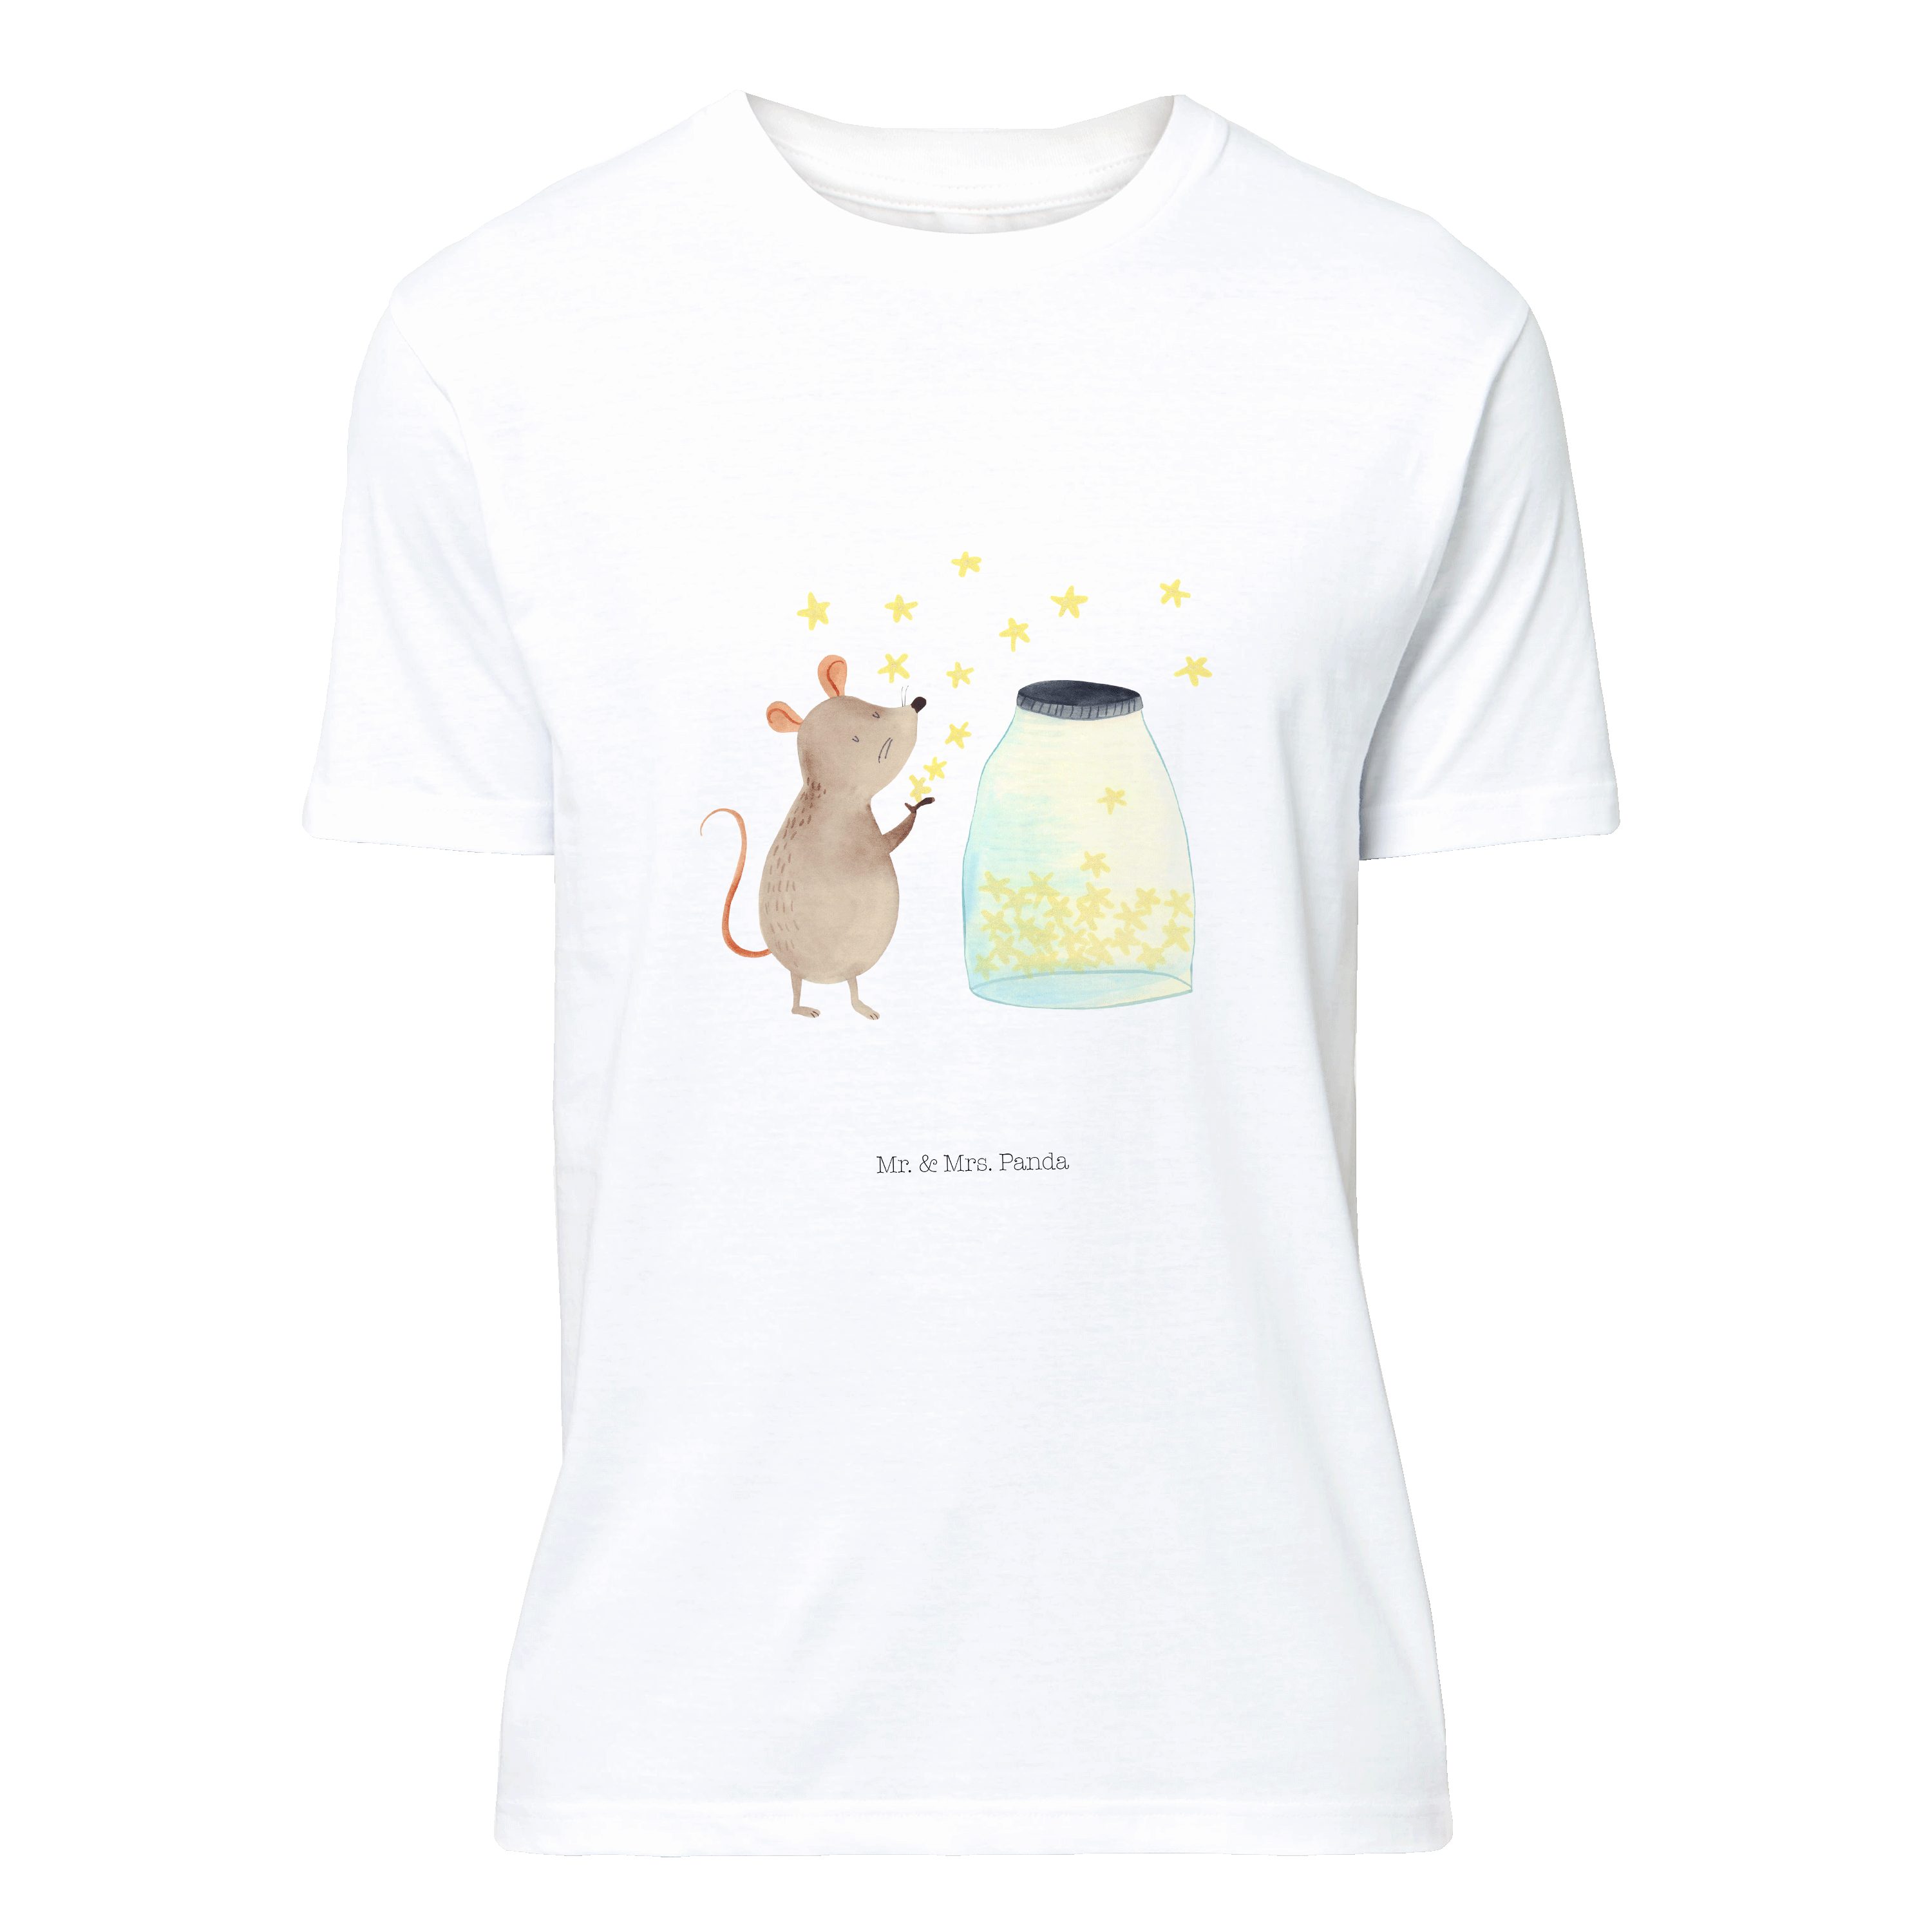 Mr. & Mrs. Panda T-Shirt »Maus Sterne - Weiß - Geschenk, Unisex,  Schwangerschaft, süße Tiermotive, Taufe, Shirt, T-Shirt, Tiere, Träume,  lustige Sprüche, Rundhals, gute Laune« (1-tlg) online kaufen | OTTO